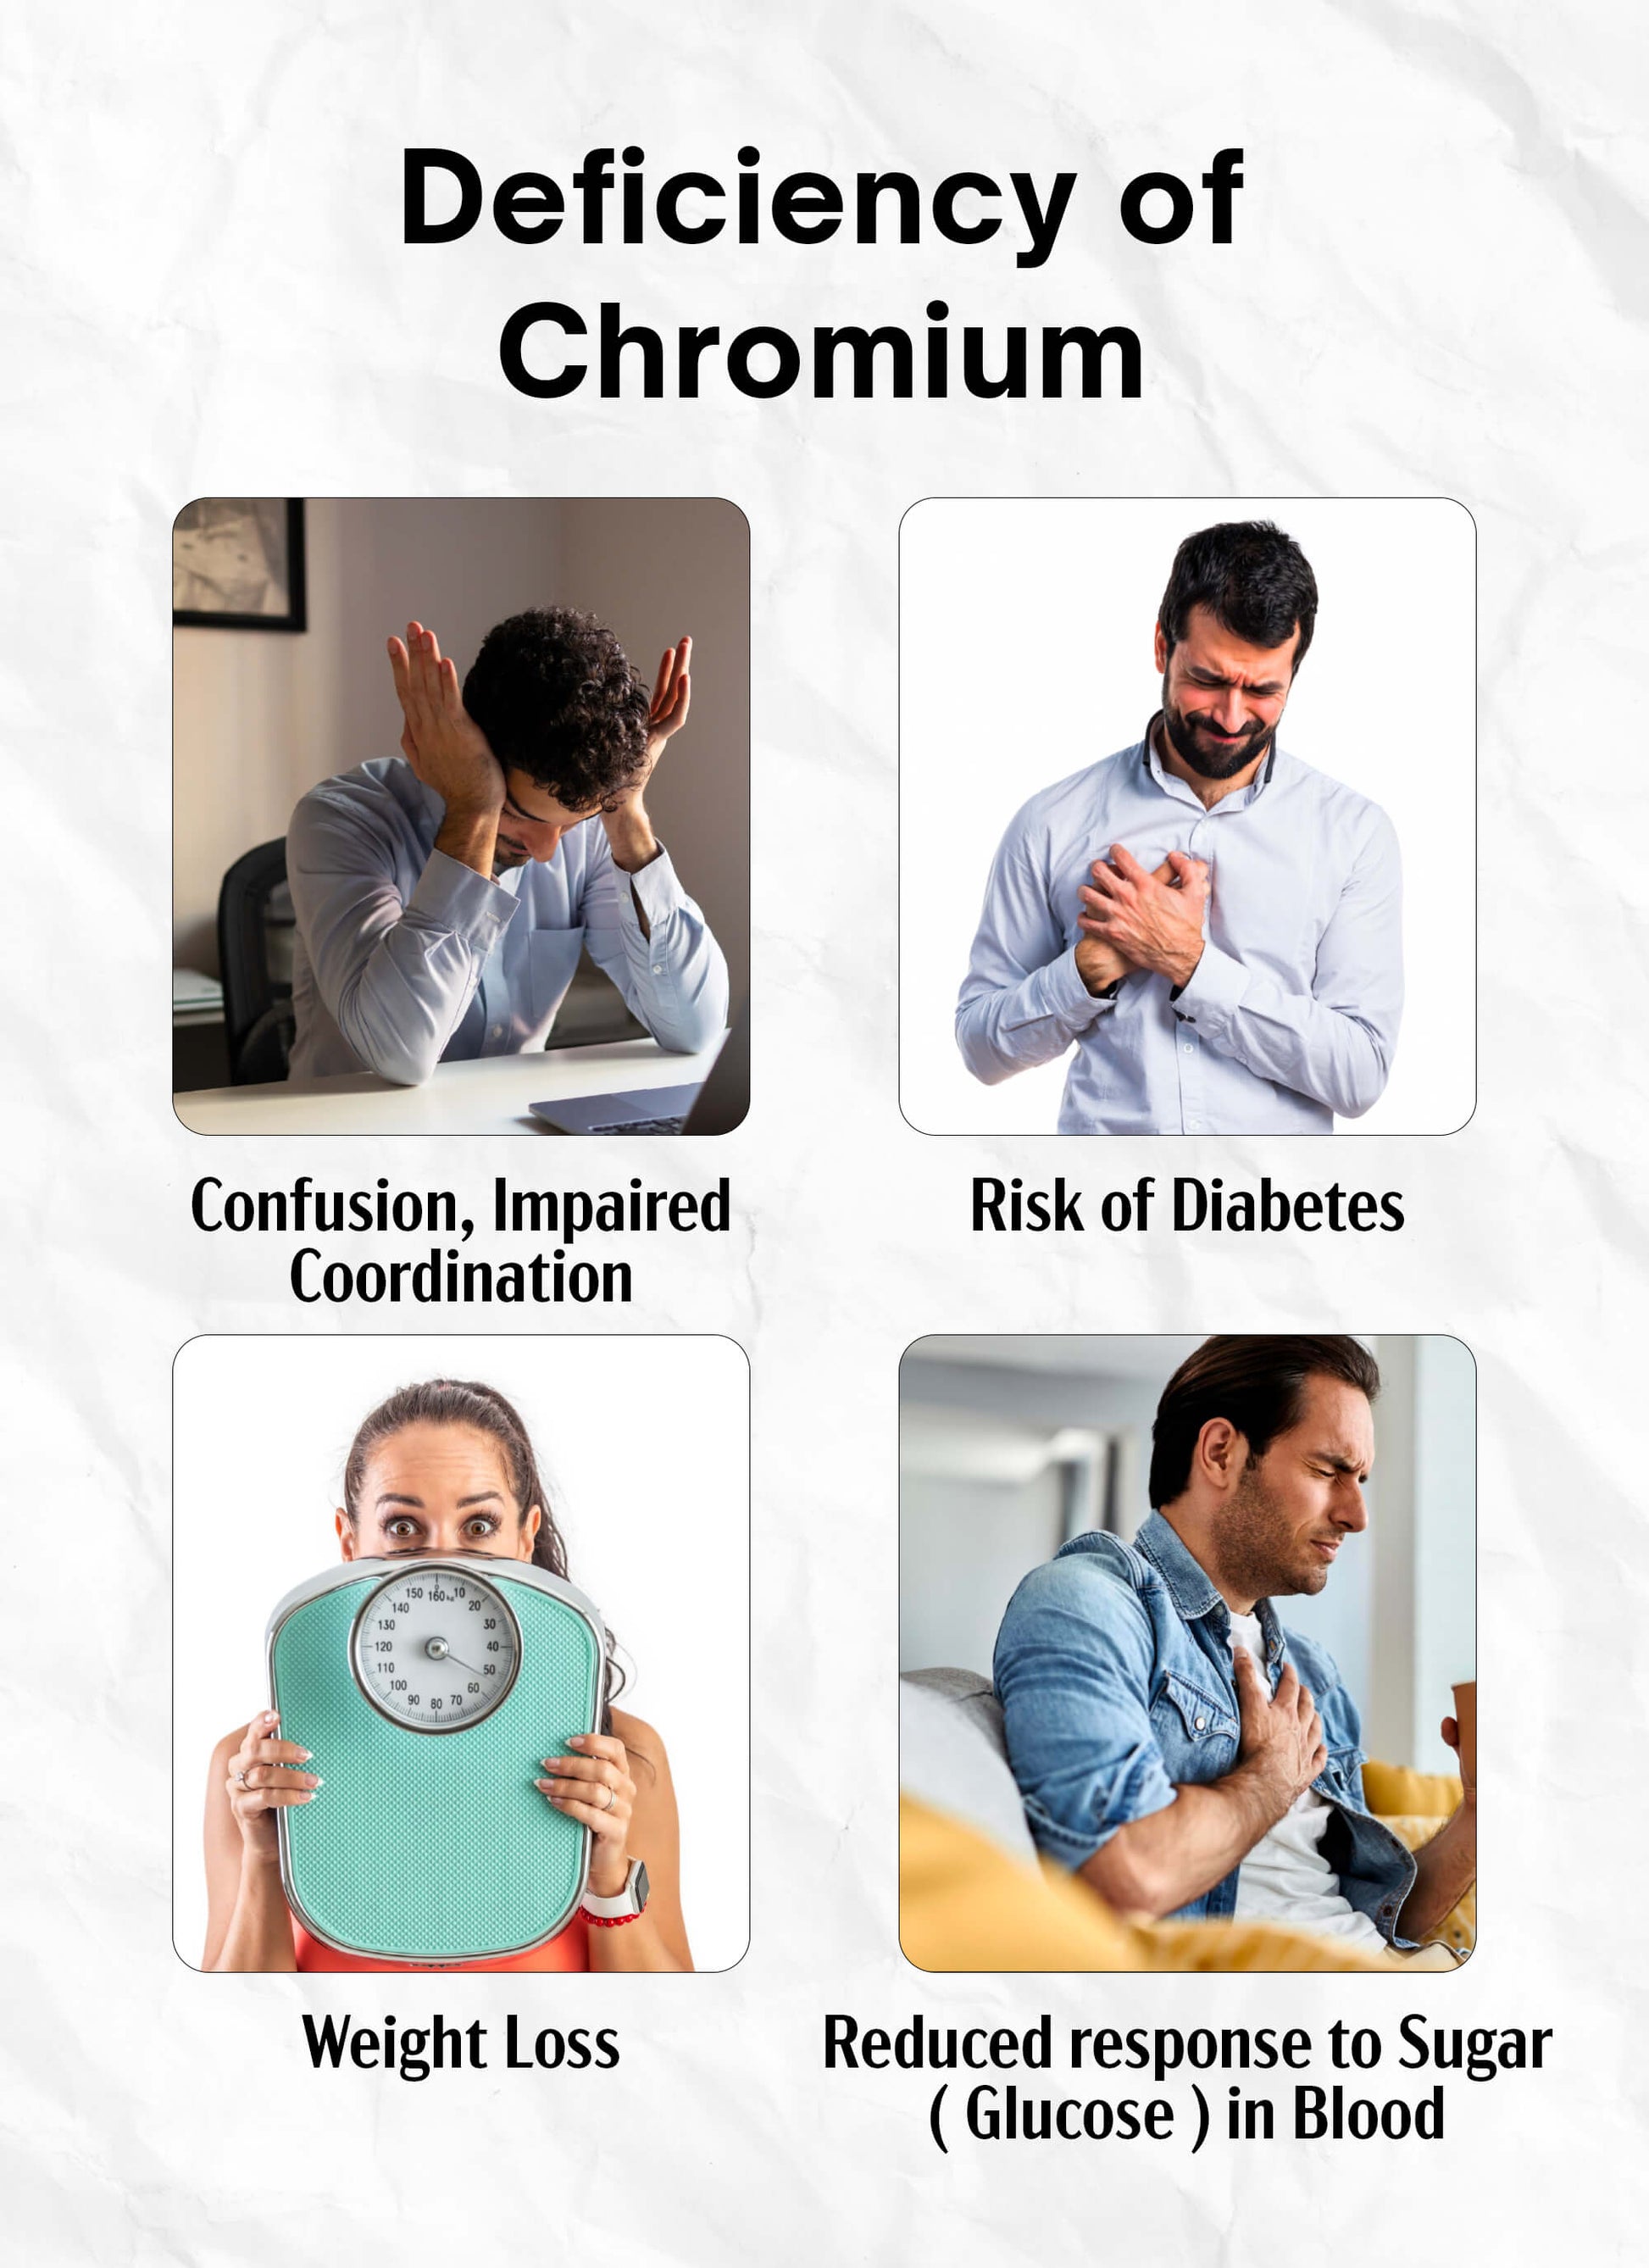 Chromium Complex